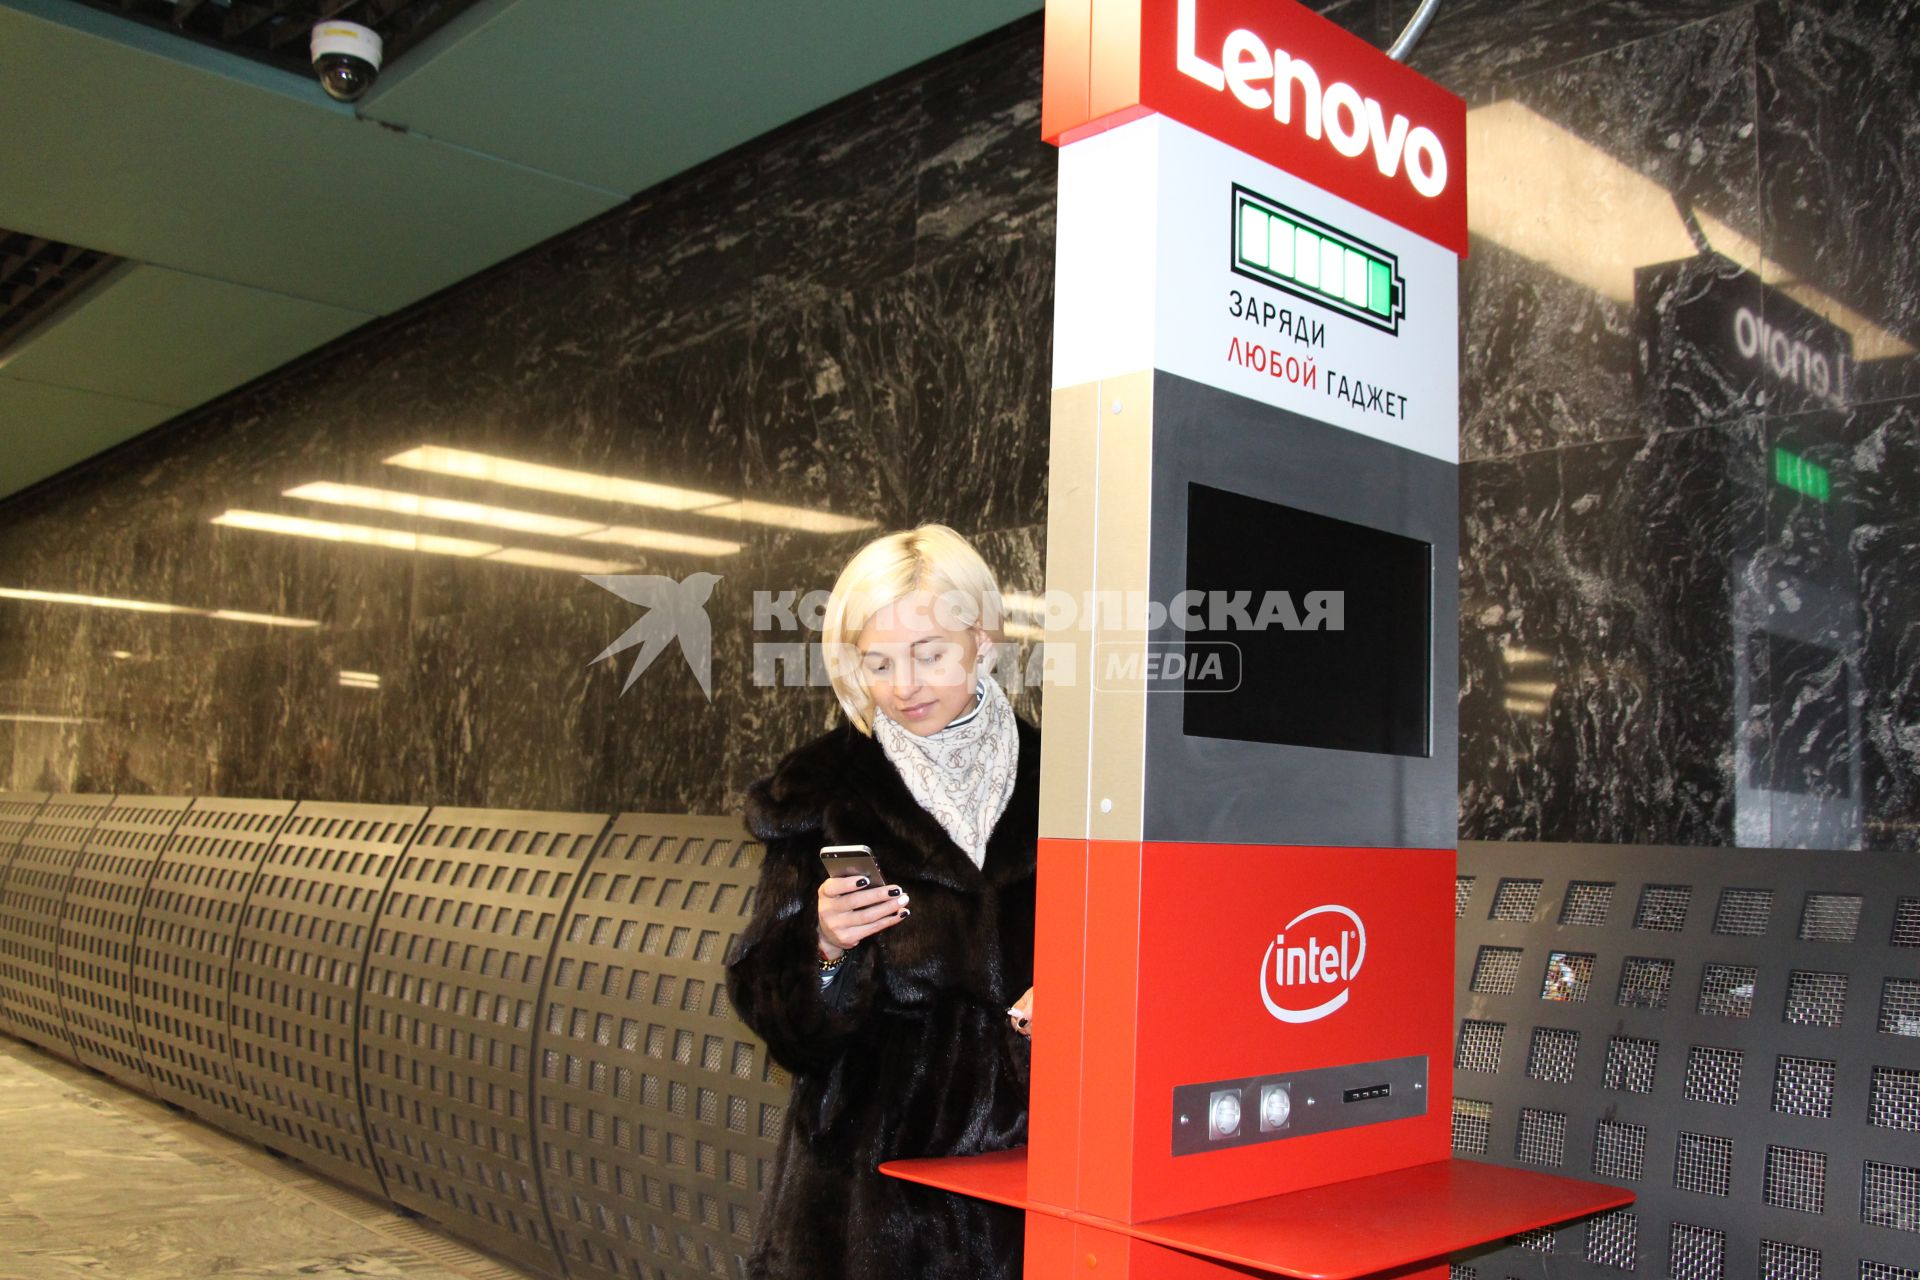 Москва. Девушка у стойки  для зарядки гаджета в вестибюле метро.